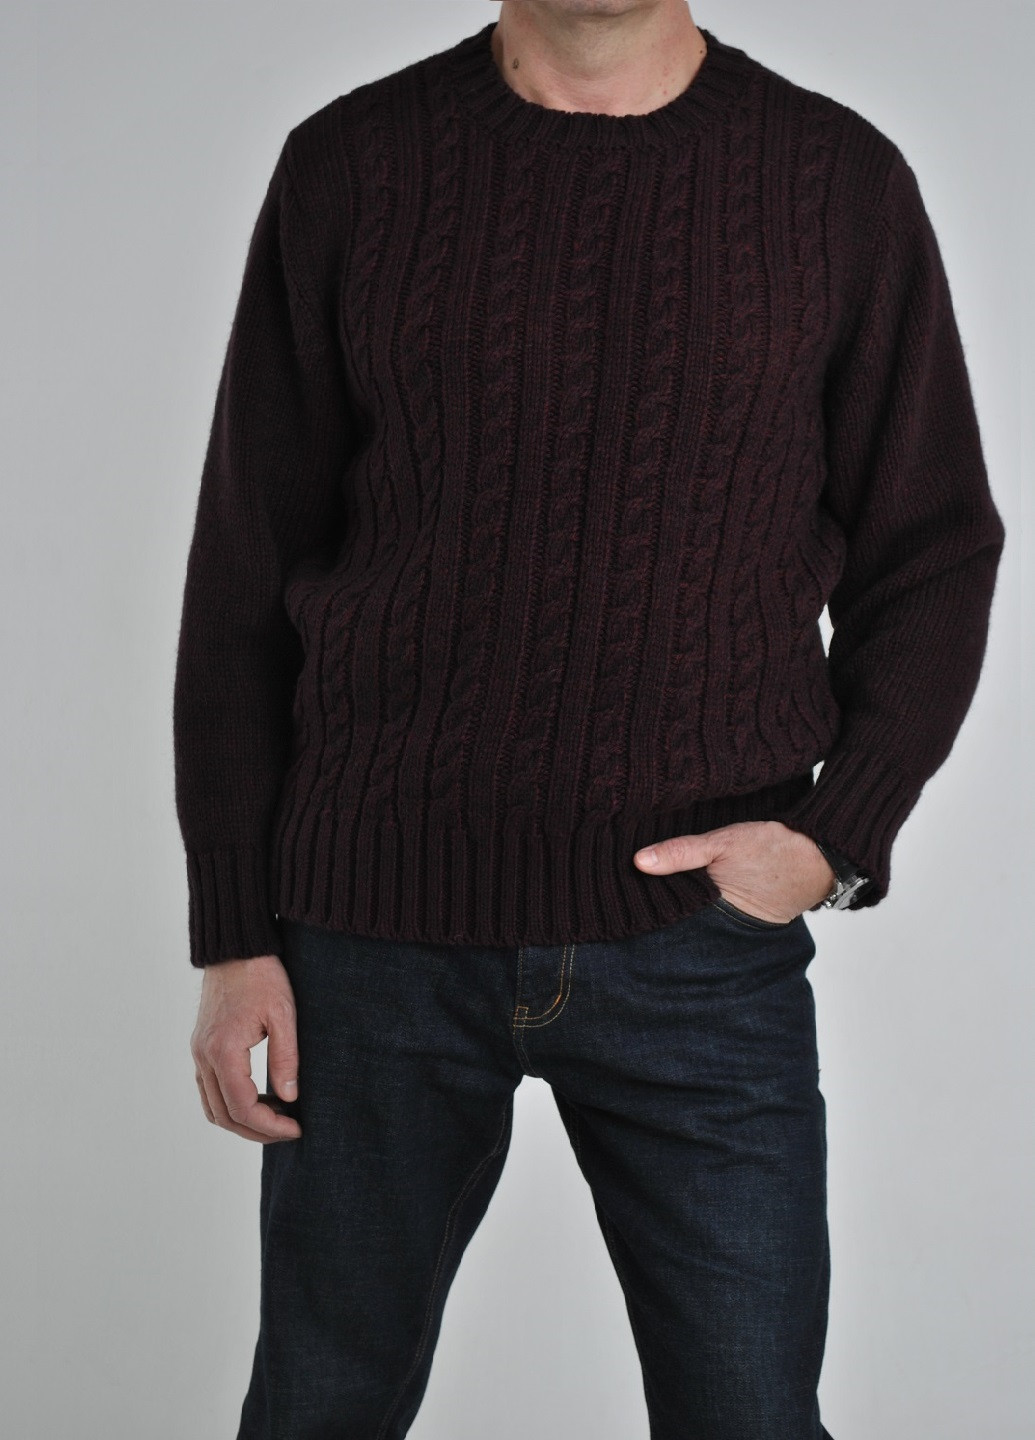 Бордовый зимний свитер с косами Berta Lucci